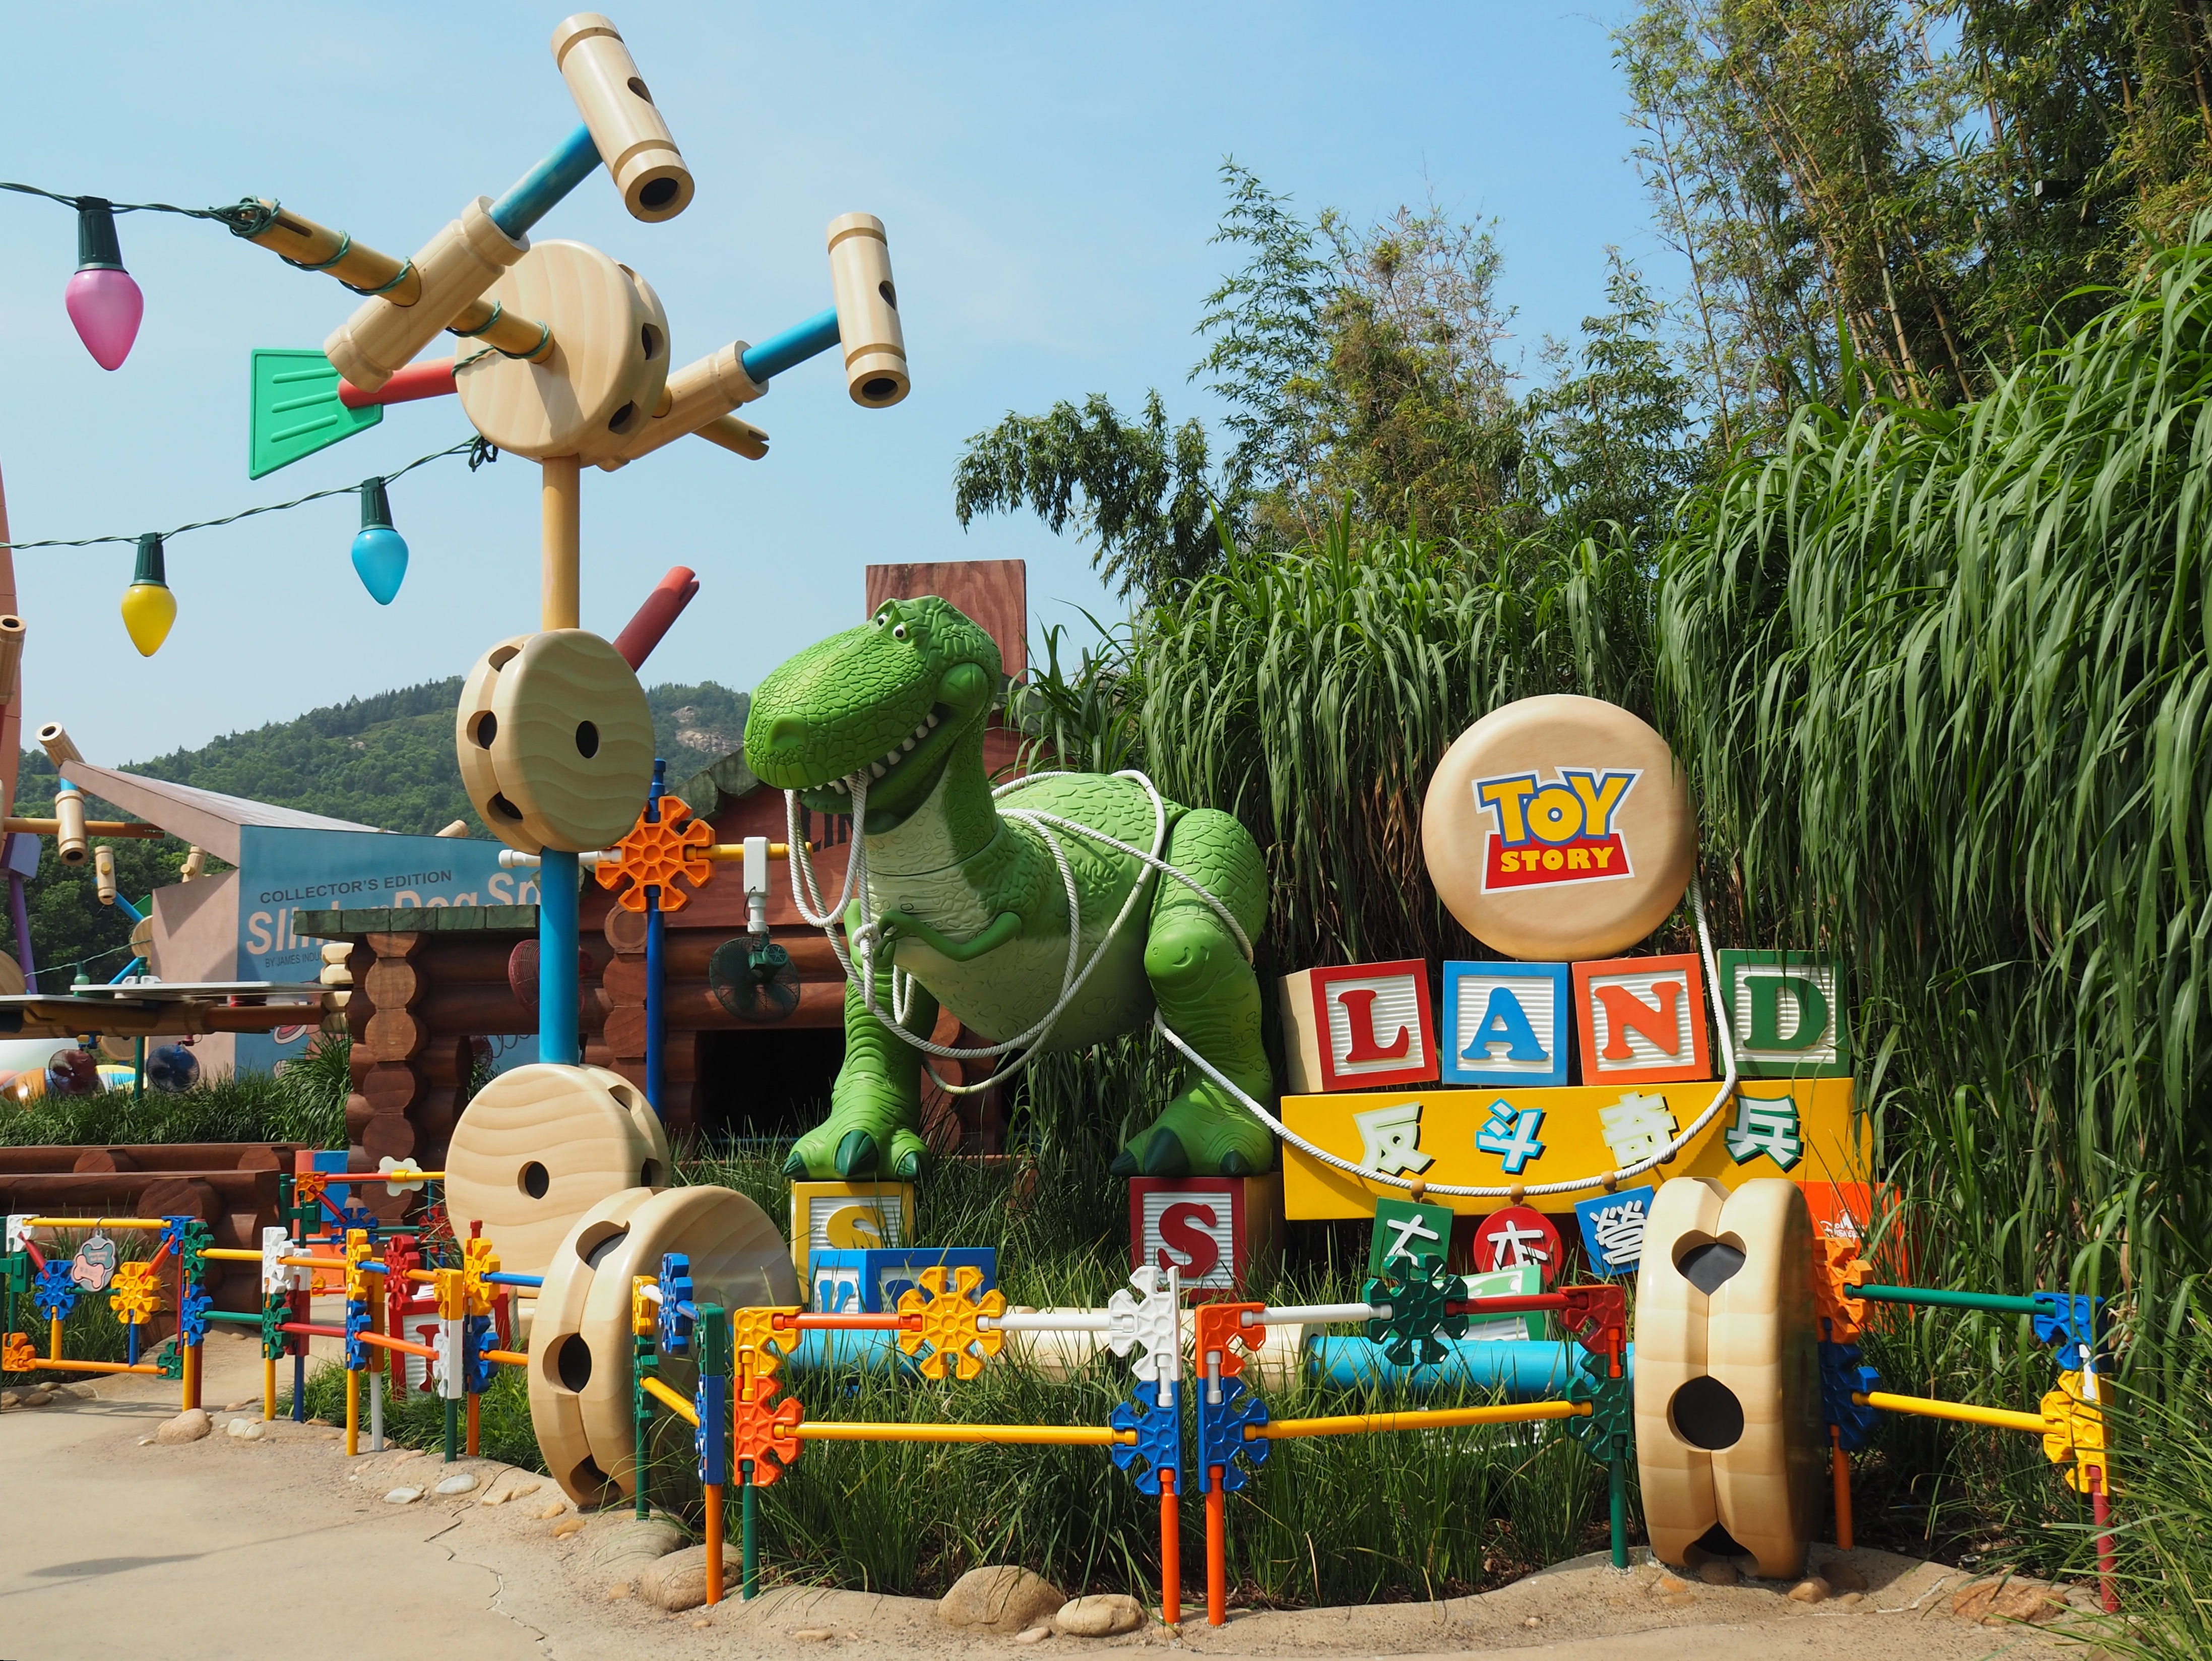 Park toys. Disneyland Toy story Land. История игрушек. Парк. Диснейленд история игрушек. Disney's Hollywood Studios.